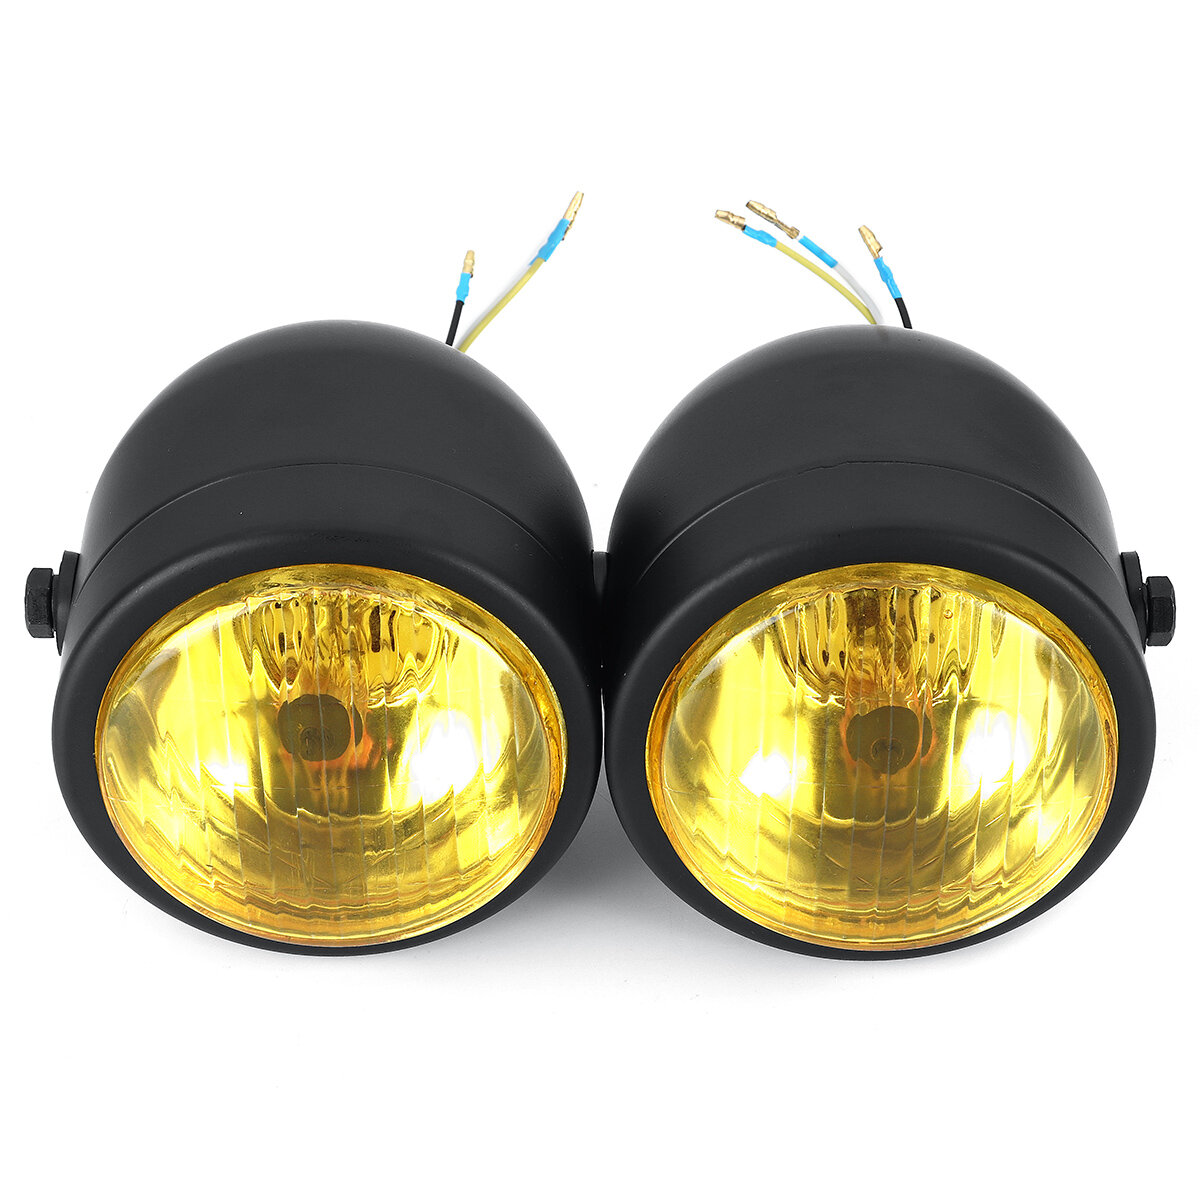 Zwarte dubbele koplamp motorfiets dubbele dubbele lamp Street Fighter dubbele koplamp